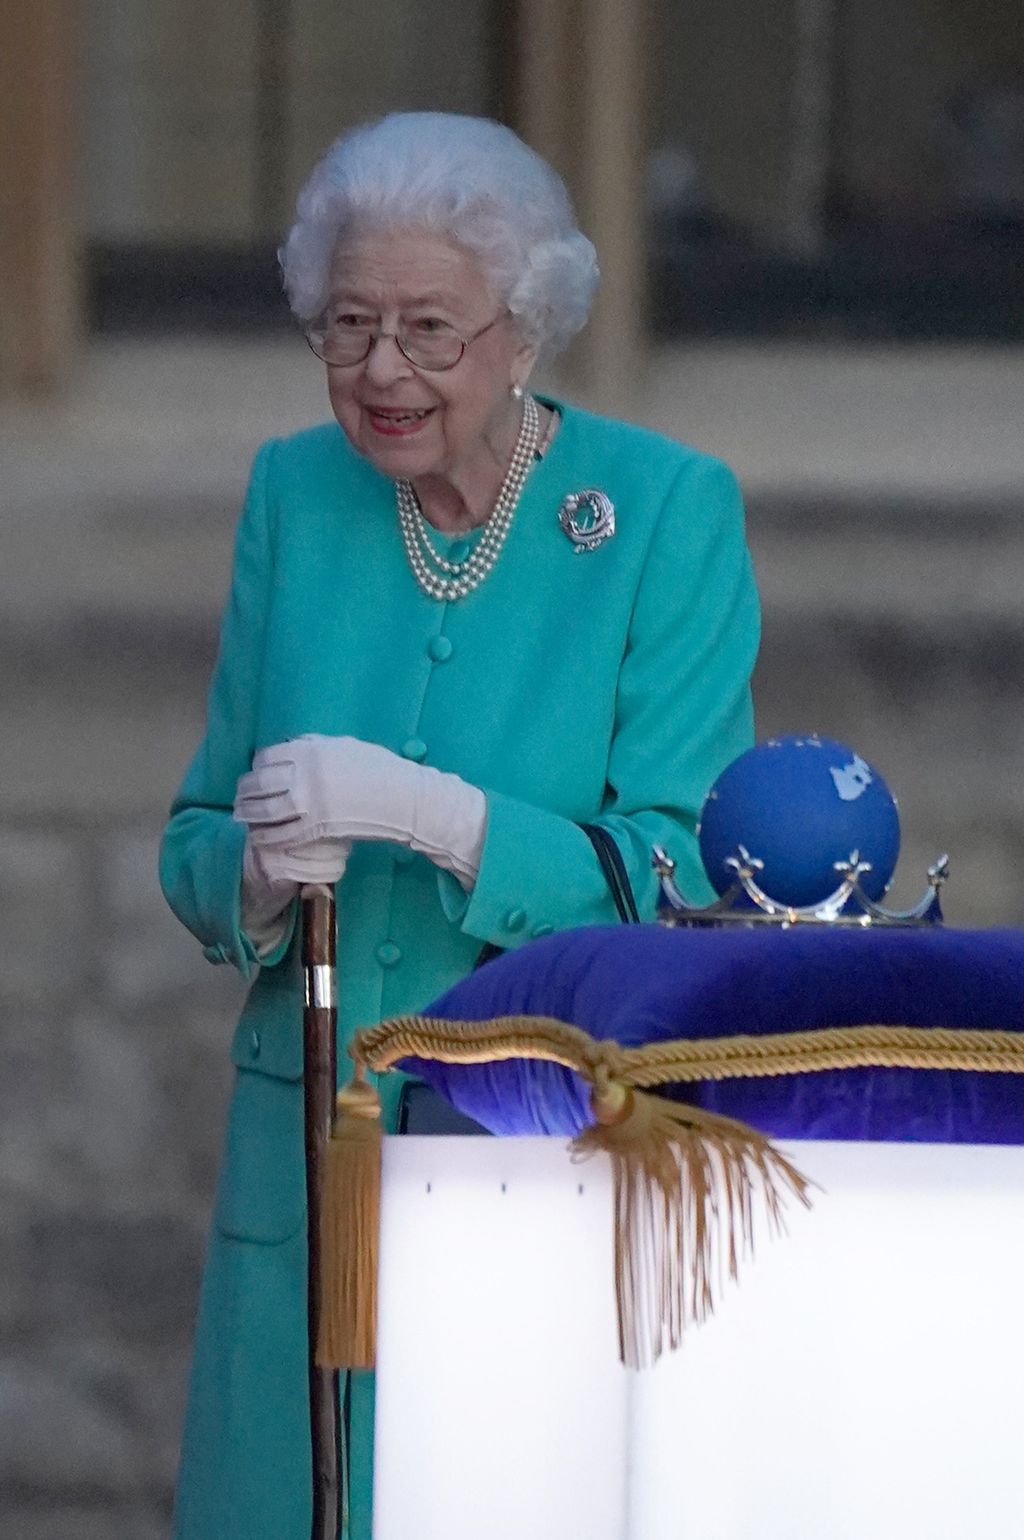 Kezdetét vette Erzsébet királynő platina jubileumi ünnepsége, amely 4 napig tart, Queen Elizabeth, Erzsébet Királynő, Erzsébet, királyi család, királyné, ünneplés, jubileum, évforduló 